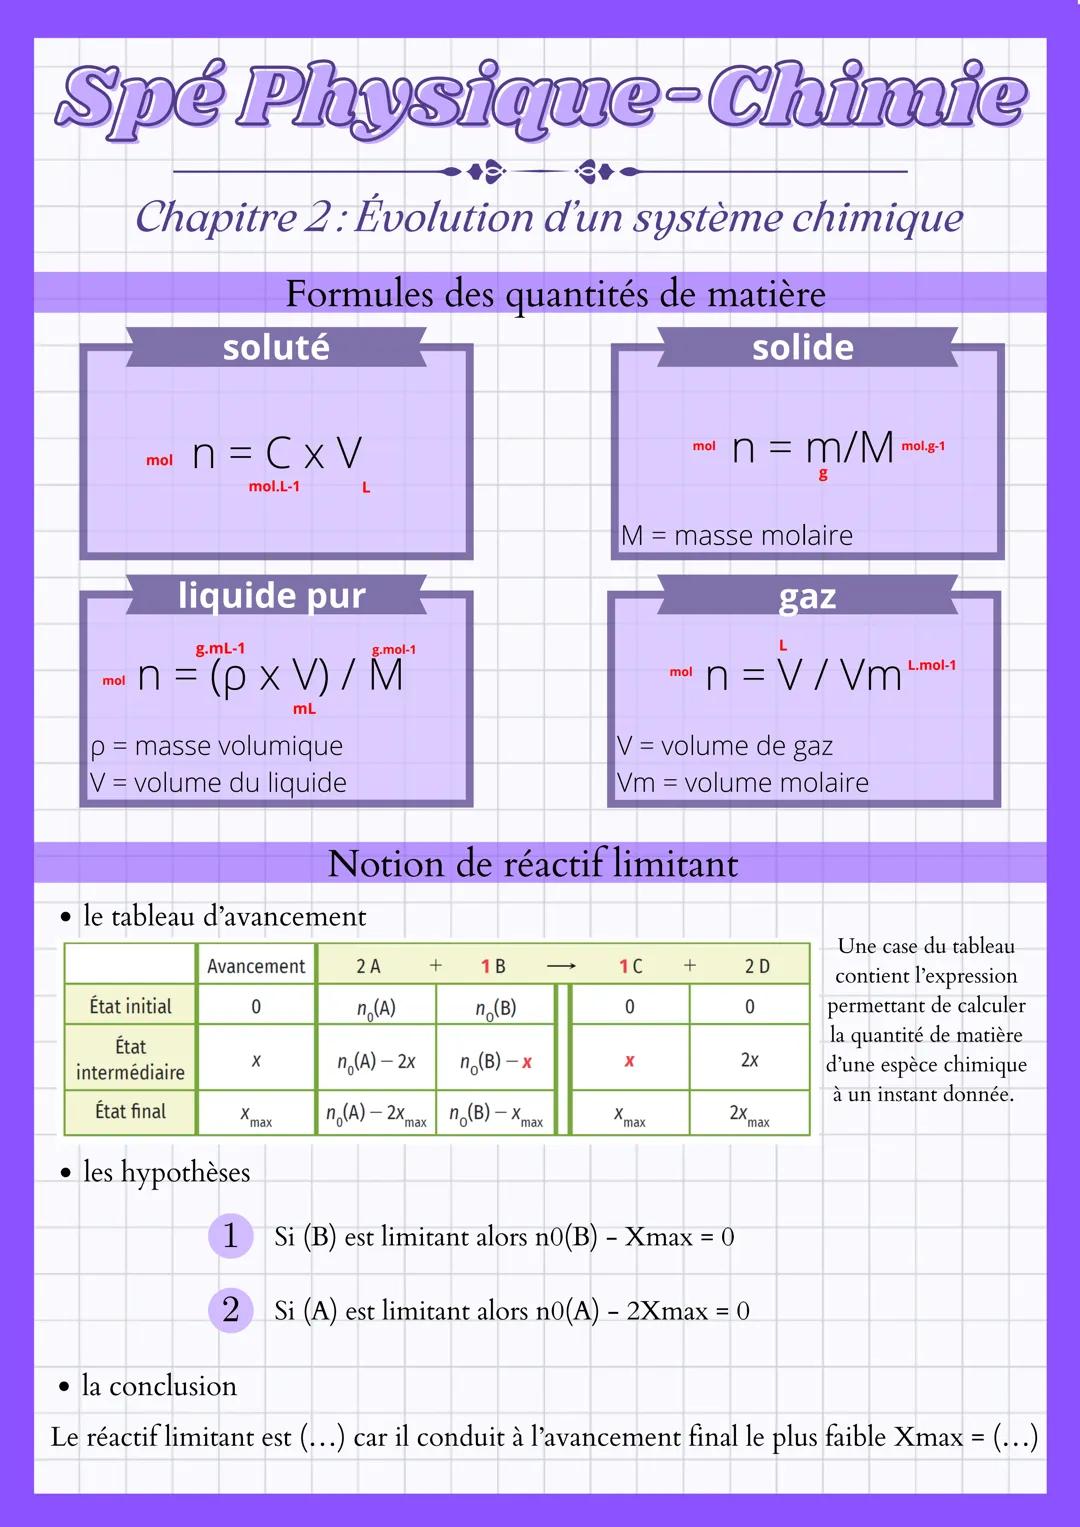 Spé Physique-Chimie
Chapitre 2: Evolution d'un système chimique
Formules des quantités de matière
solide
soluté
mol n = CXV
mol.L-1
liquide 